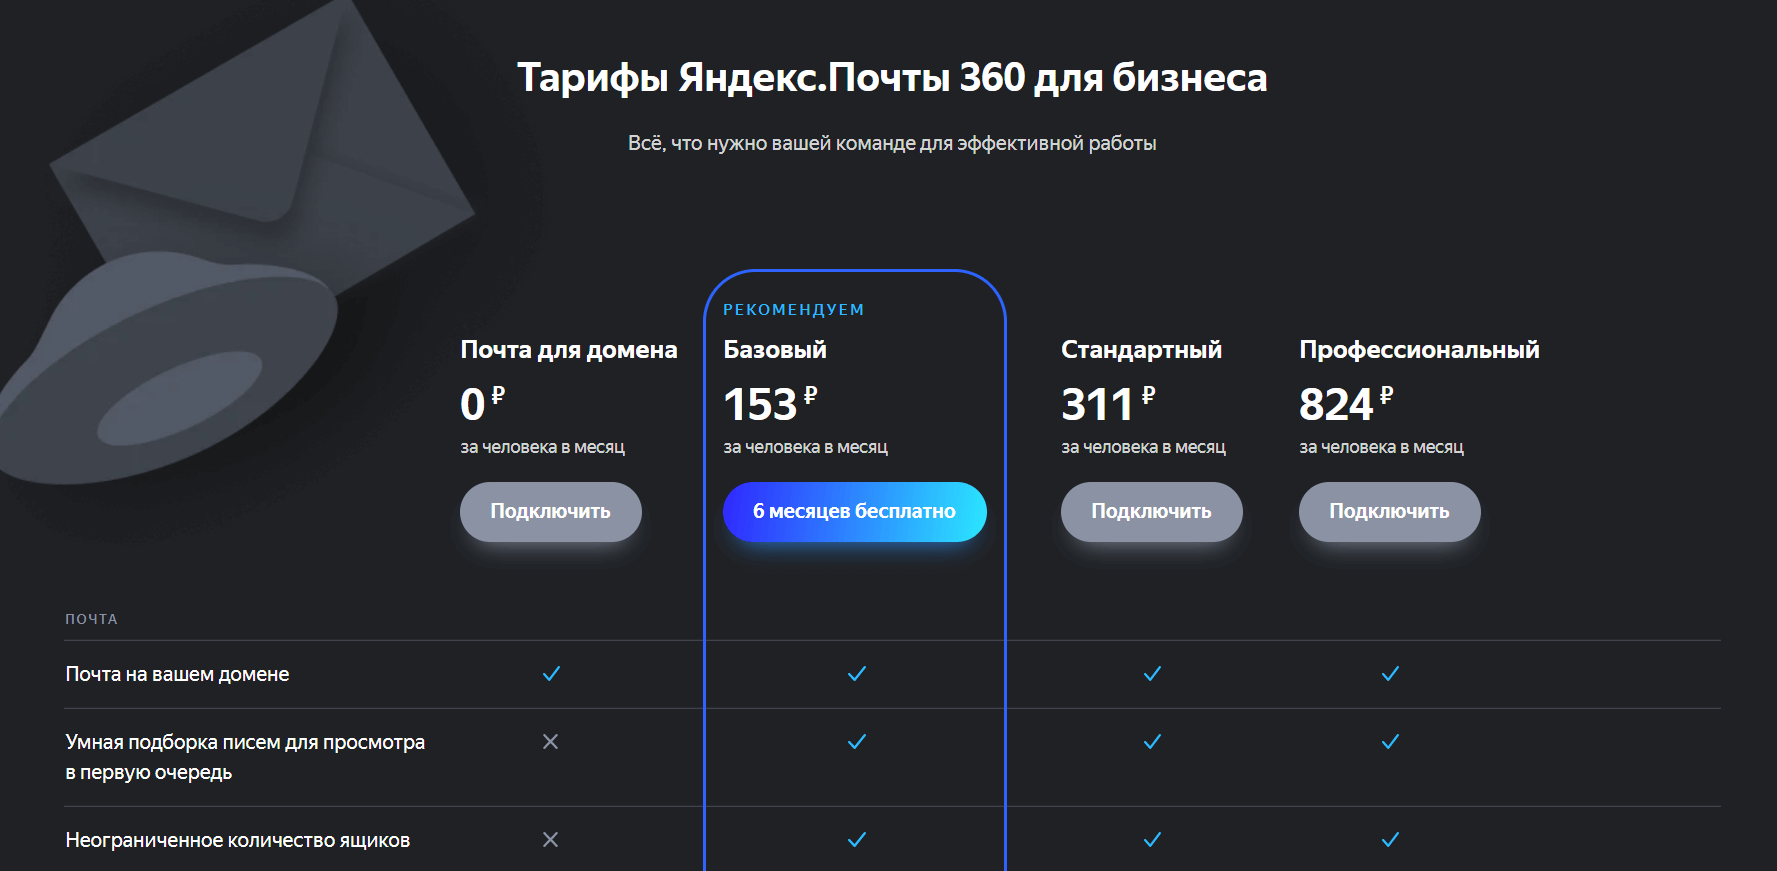 Регистрация в Яндекс 360 для бизнеса